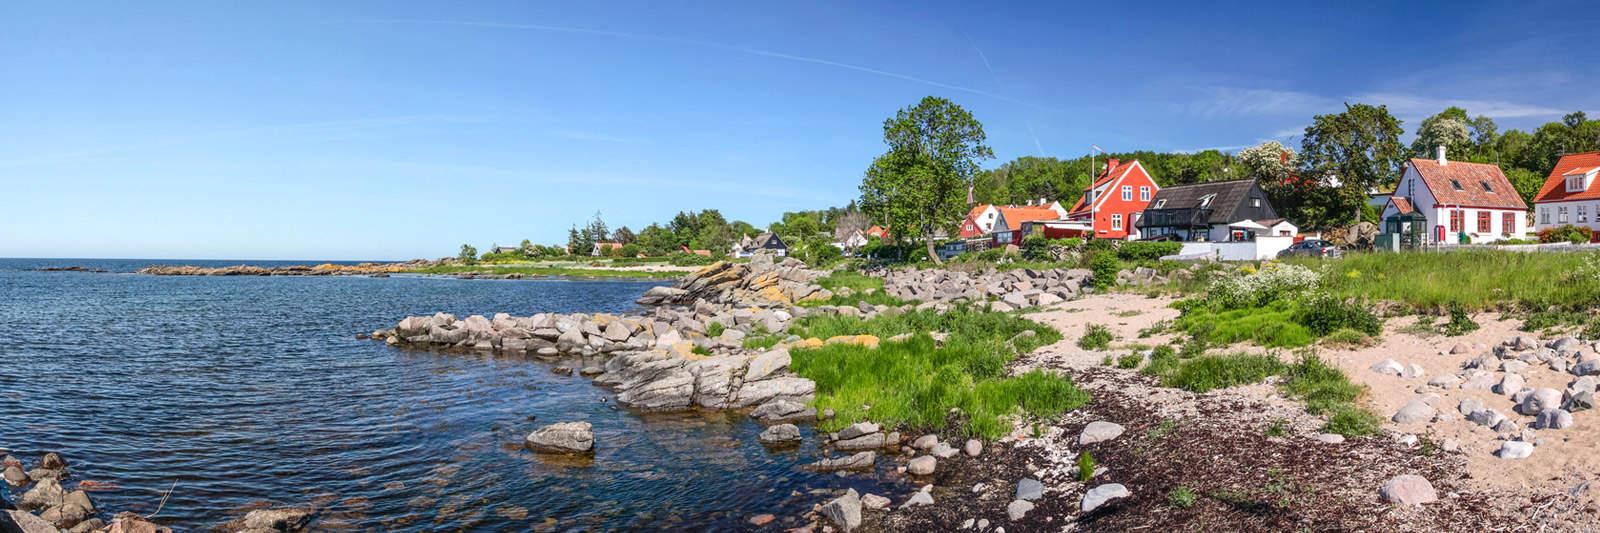 Ferienhaus Dänemark: Entdecke Dänemark auf Deine Art - tourist-online.de